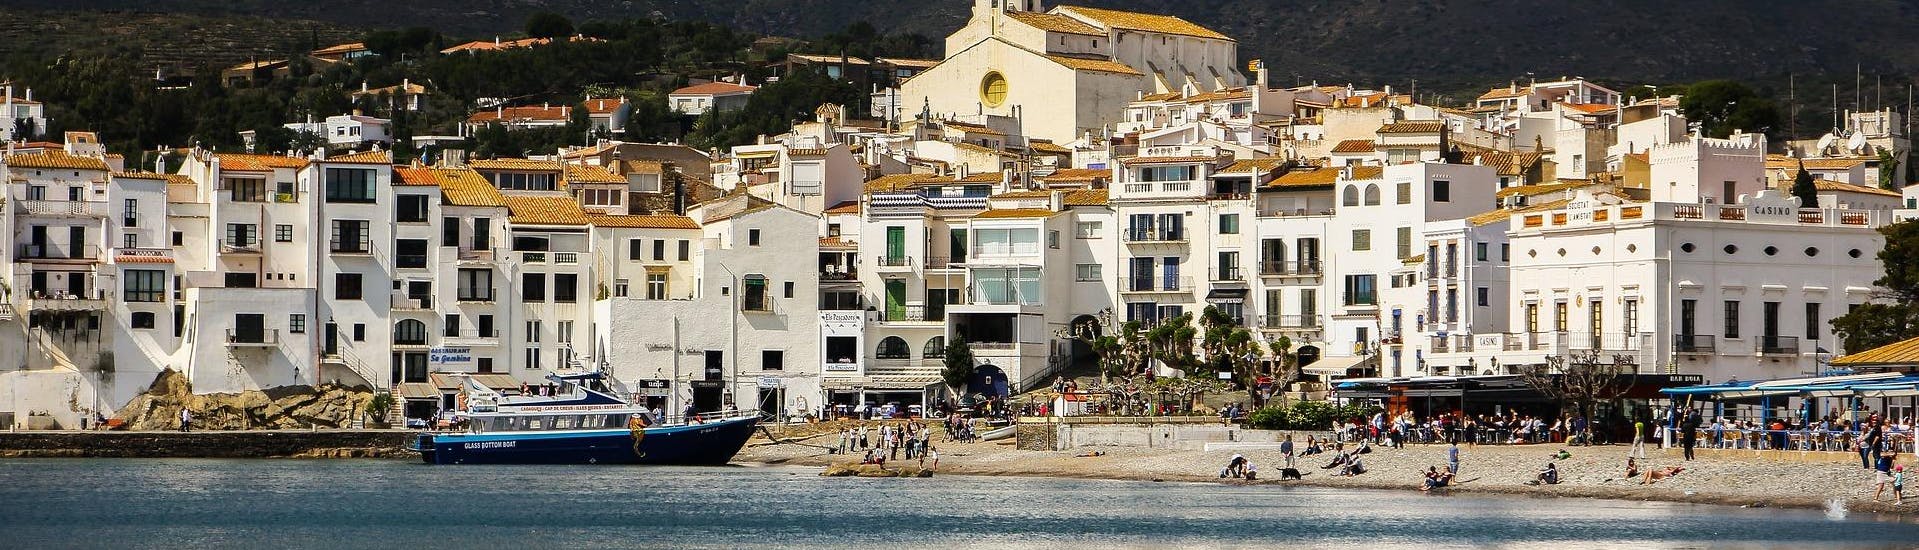 Vista della costa durante una gita in barca a Cadaqués.